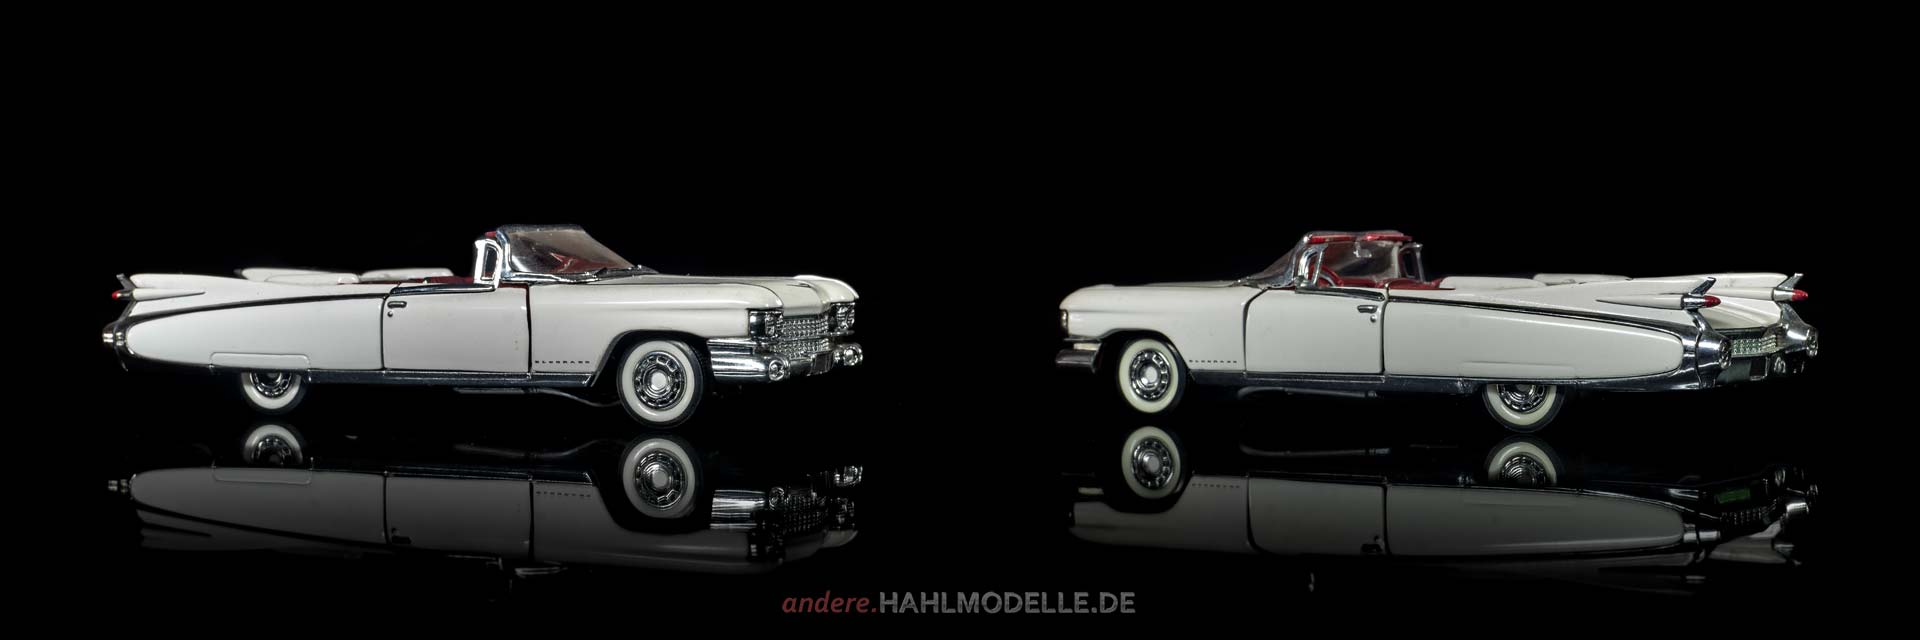 Cadillac Eldorado Biarritz Convertible | Cabriolet | Franklin Mint Precision Models | 1:43 | www.andere.hahlmodelle.de